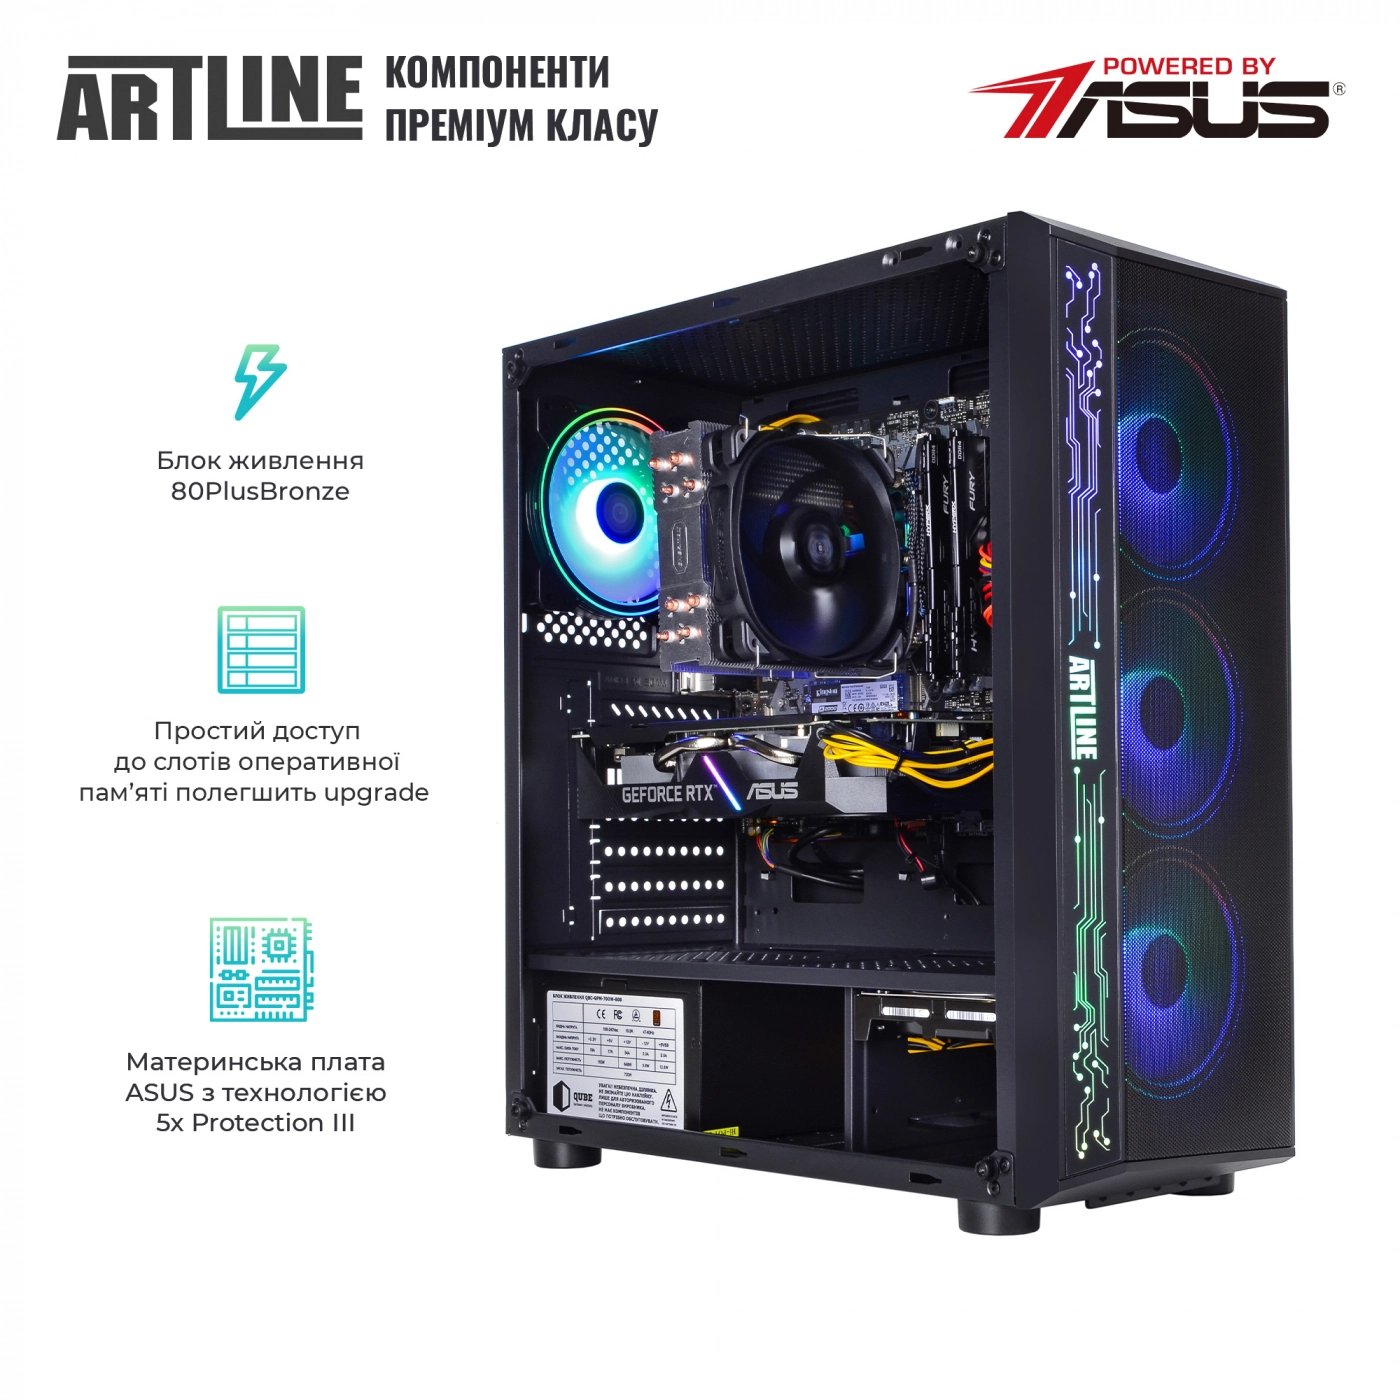 Купить Компьютер ARTLINE Gaming X77v57 - фото 3